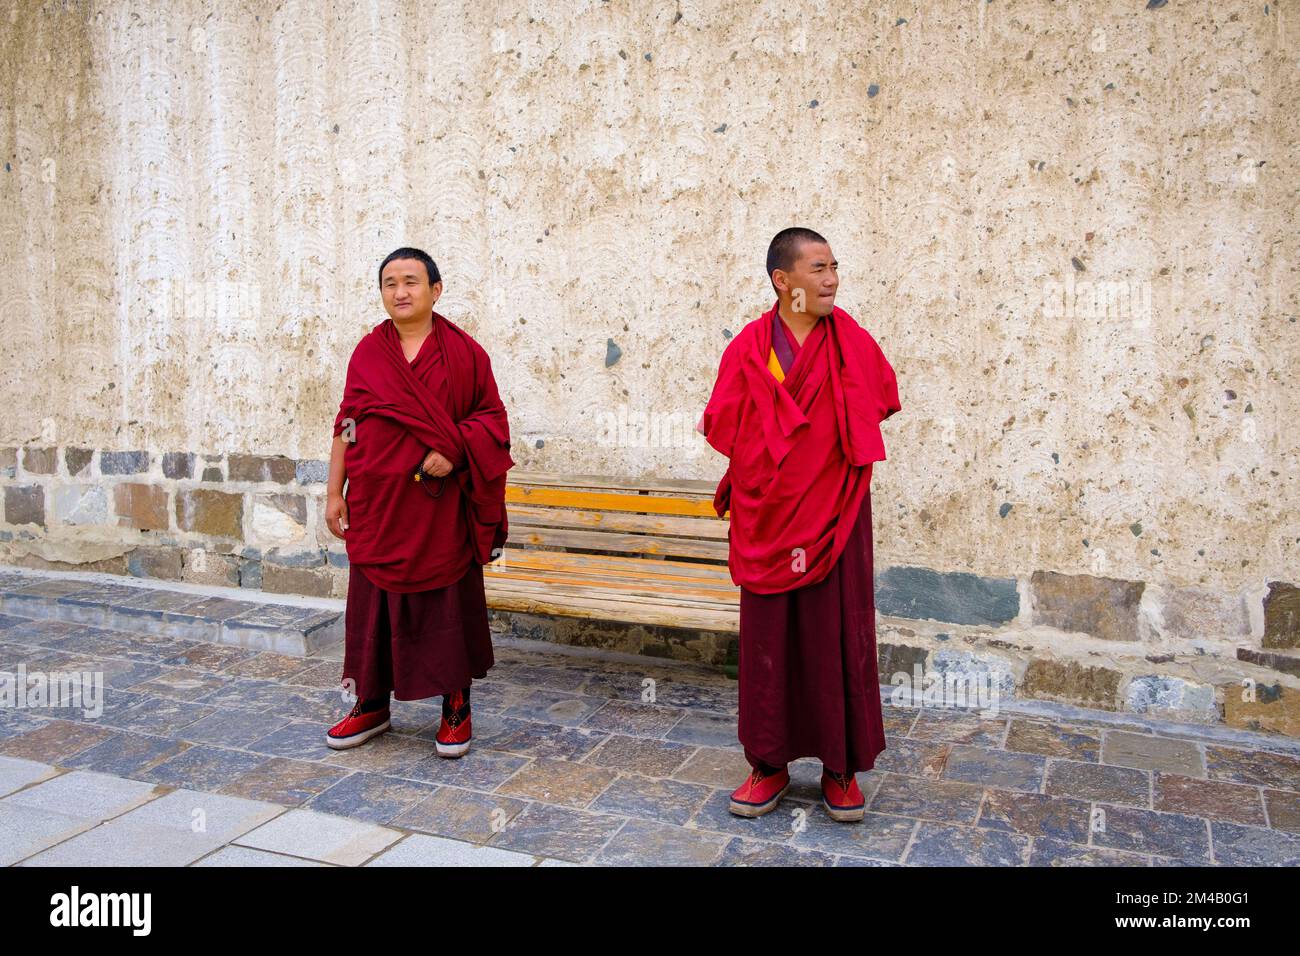 Monks in a courtyard of the Tashi Lhunpo Monastery. Shigatse. Tibet Autonomous Region. China. Stock Photo